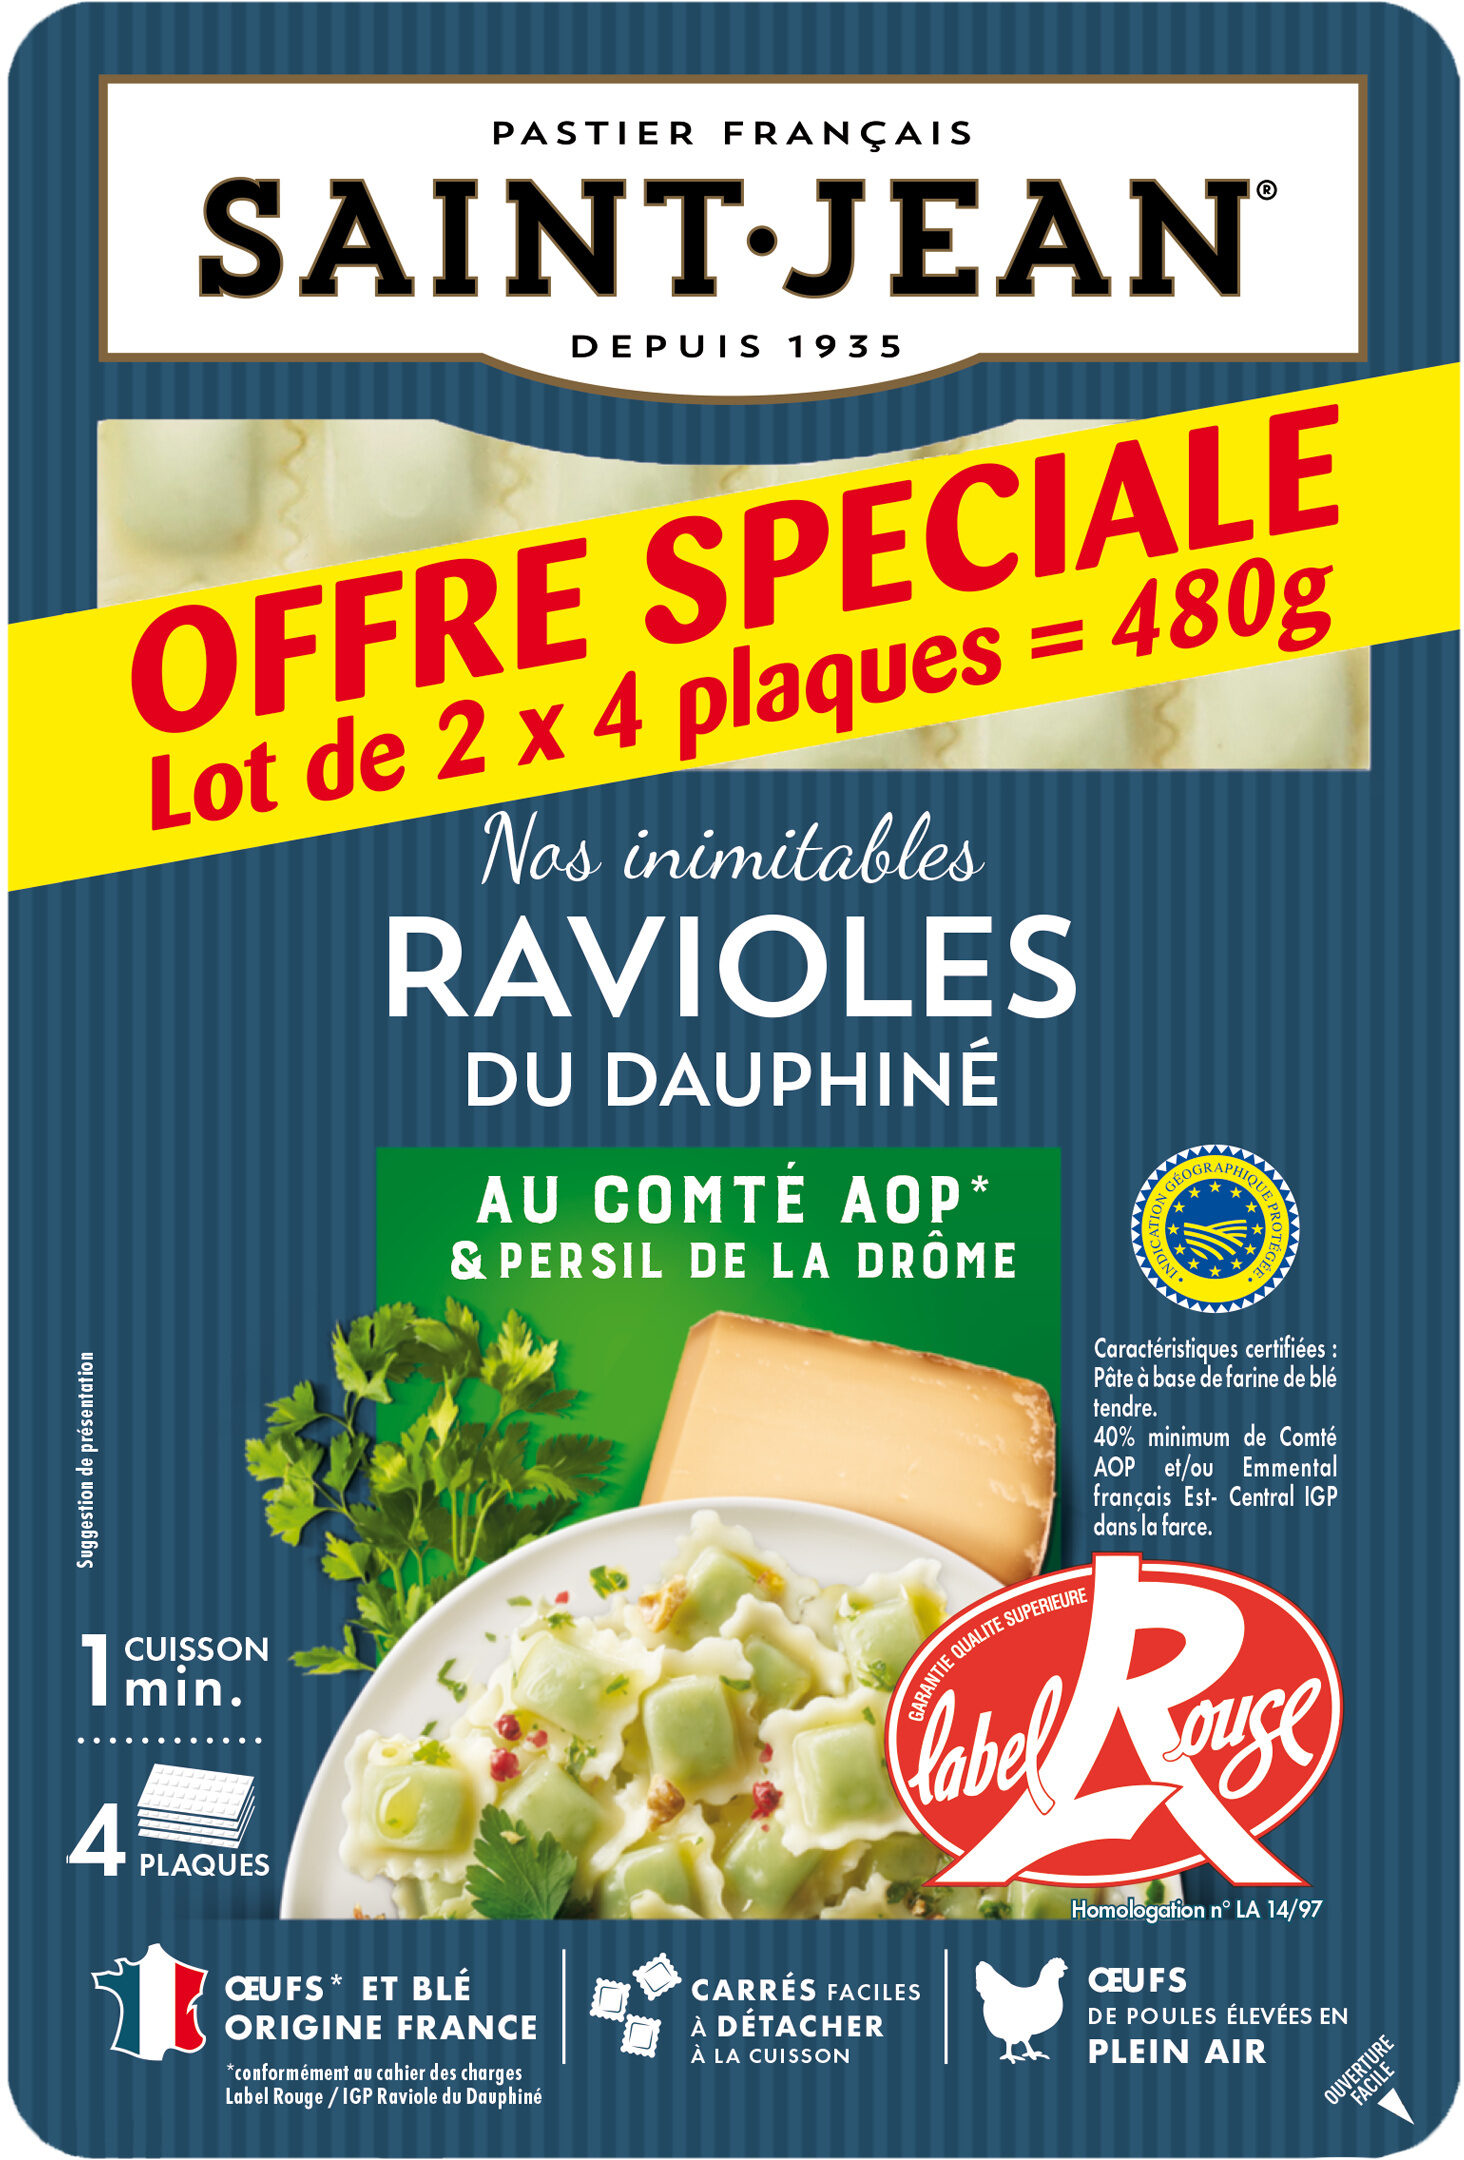 Ravioles du Dauphiné LABEL ROUGE IGP Lot de - Produit